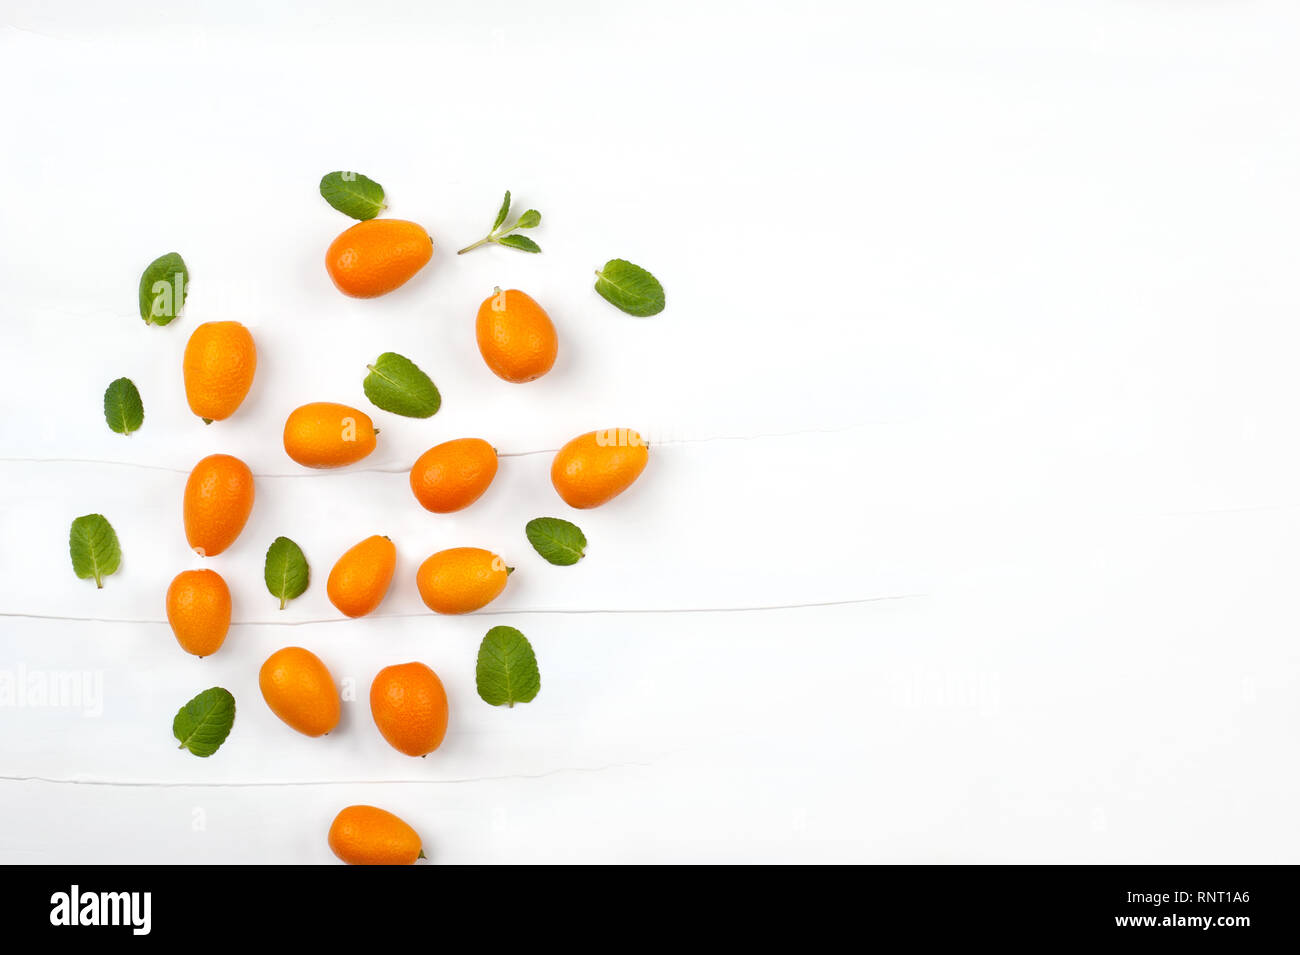 Contexte de création faite avec des feuilles de menthe et de fruits kumquat.Kumquats ensemble, la vie toujours motif de fond. Copie de l'image avec l'espace. Banque D'Images